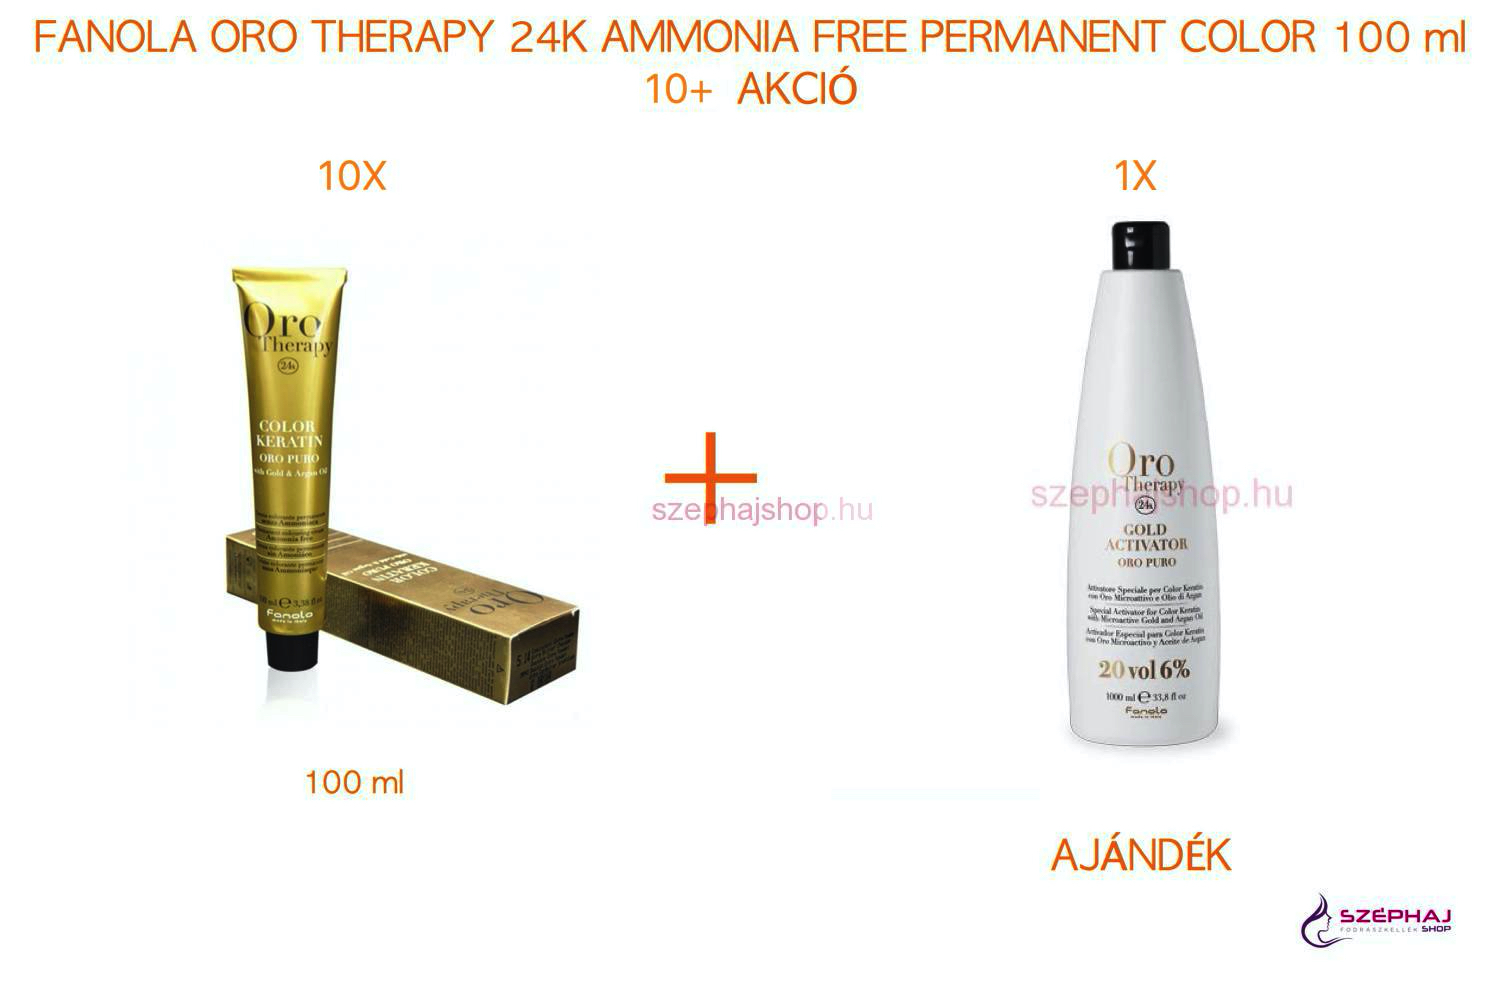 FANOLA ORO Therapy 24K Ammonia Free Permanent Color 100 ml 10+ AKCIÓ